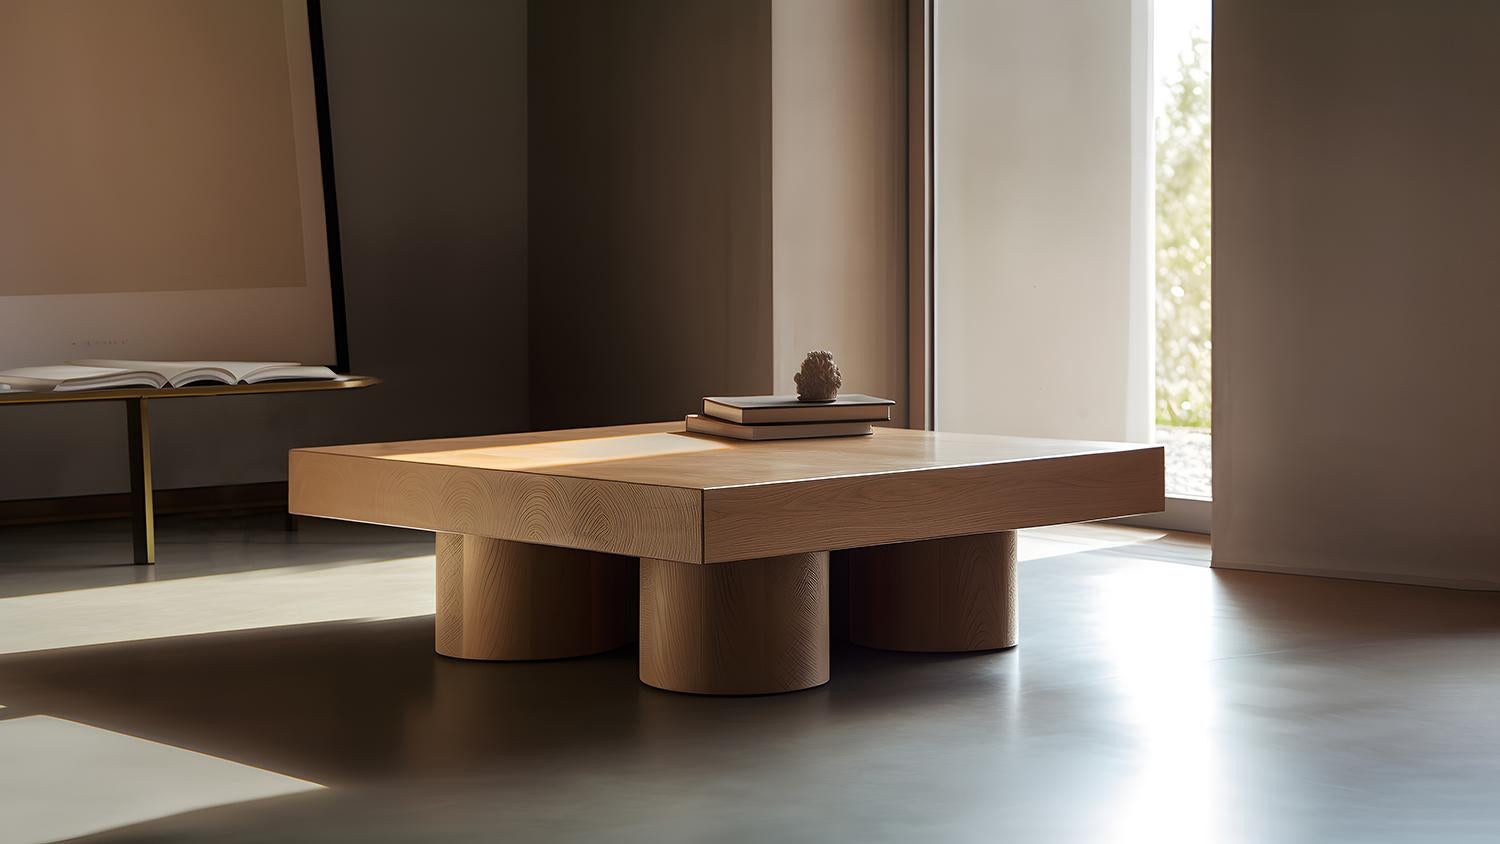 Table basse carrée brutaliste en placage de chêne rouge, Podio by NONO

L'équipe de design de NONO présente une table basse qui respire l'élégance et la modernité. Cette pièce repose sur un ensemble de colonnes cylindriques, qui constituent une